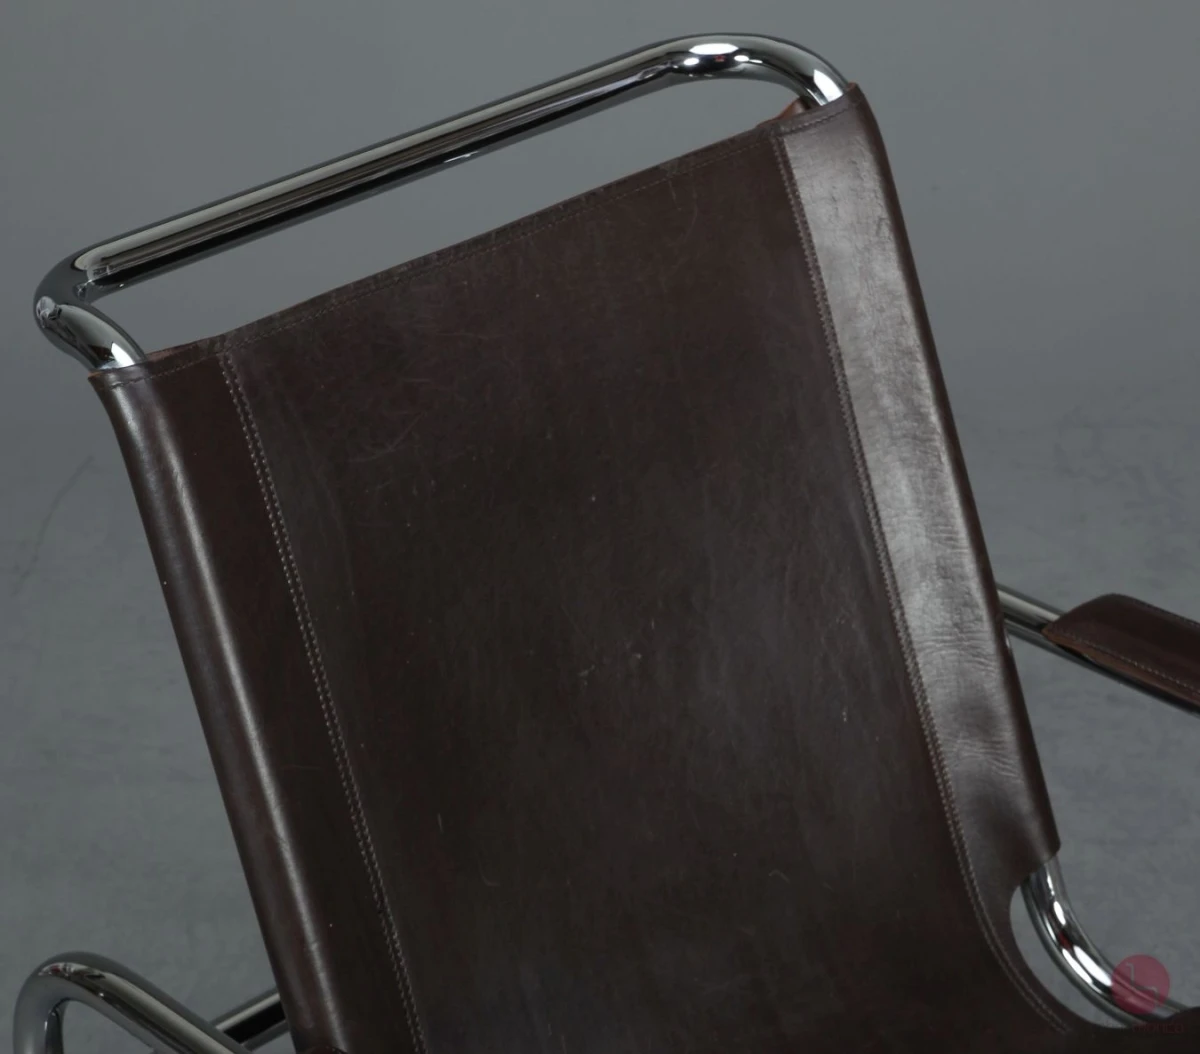 Thonet S35 L Freischwinger Sessel mit braunem Leder Vintage gebraucht